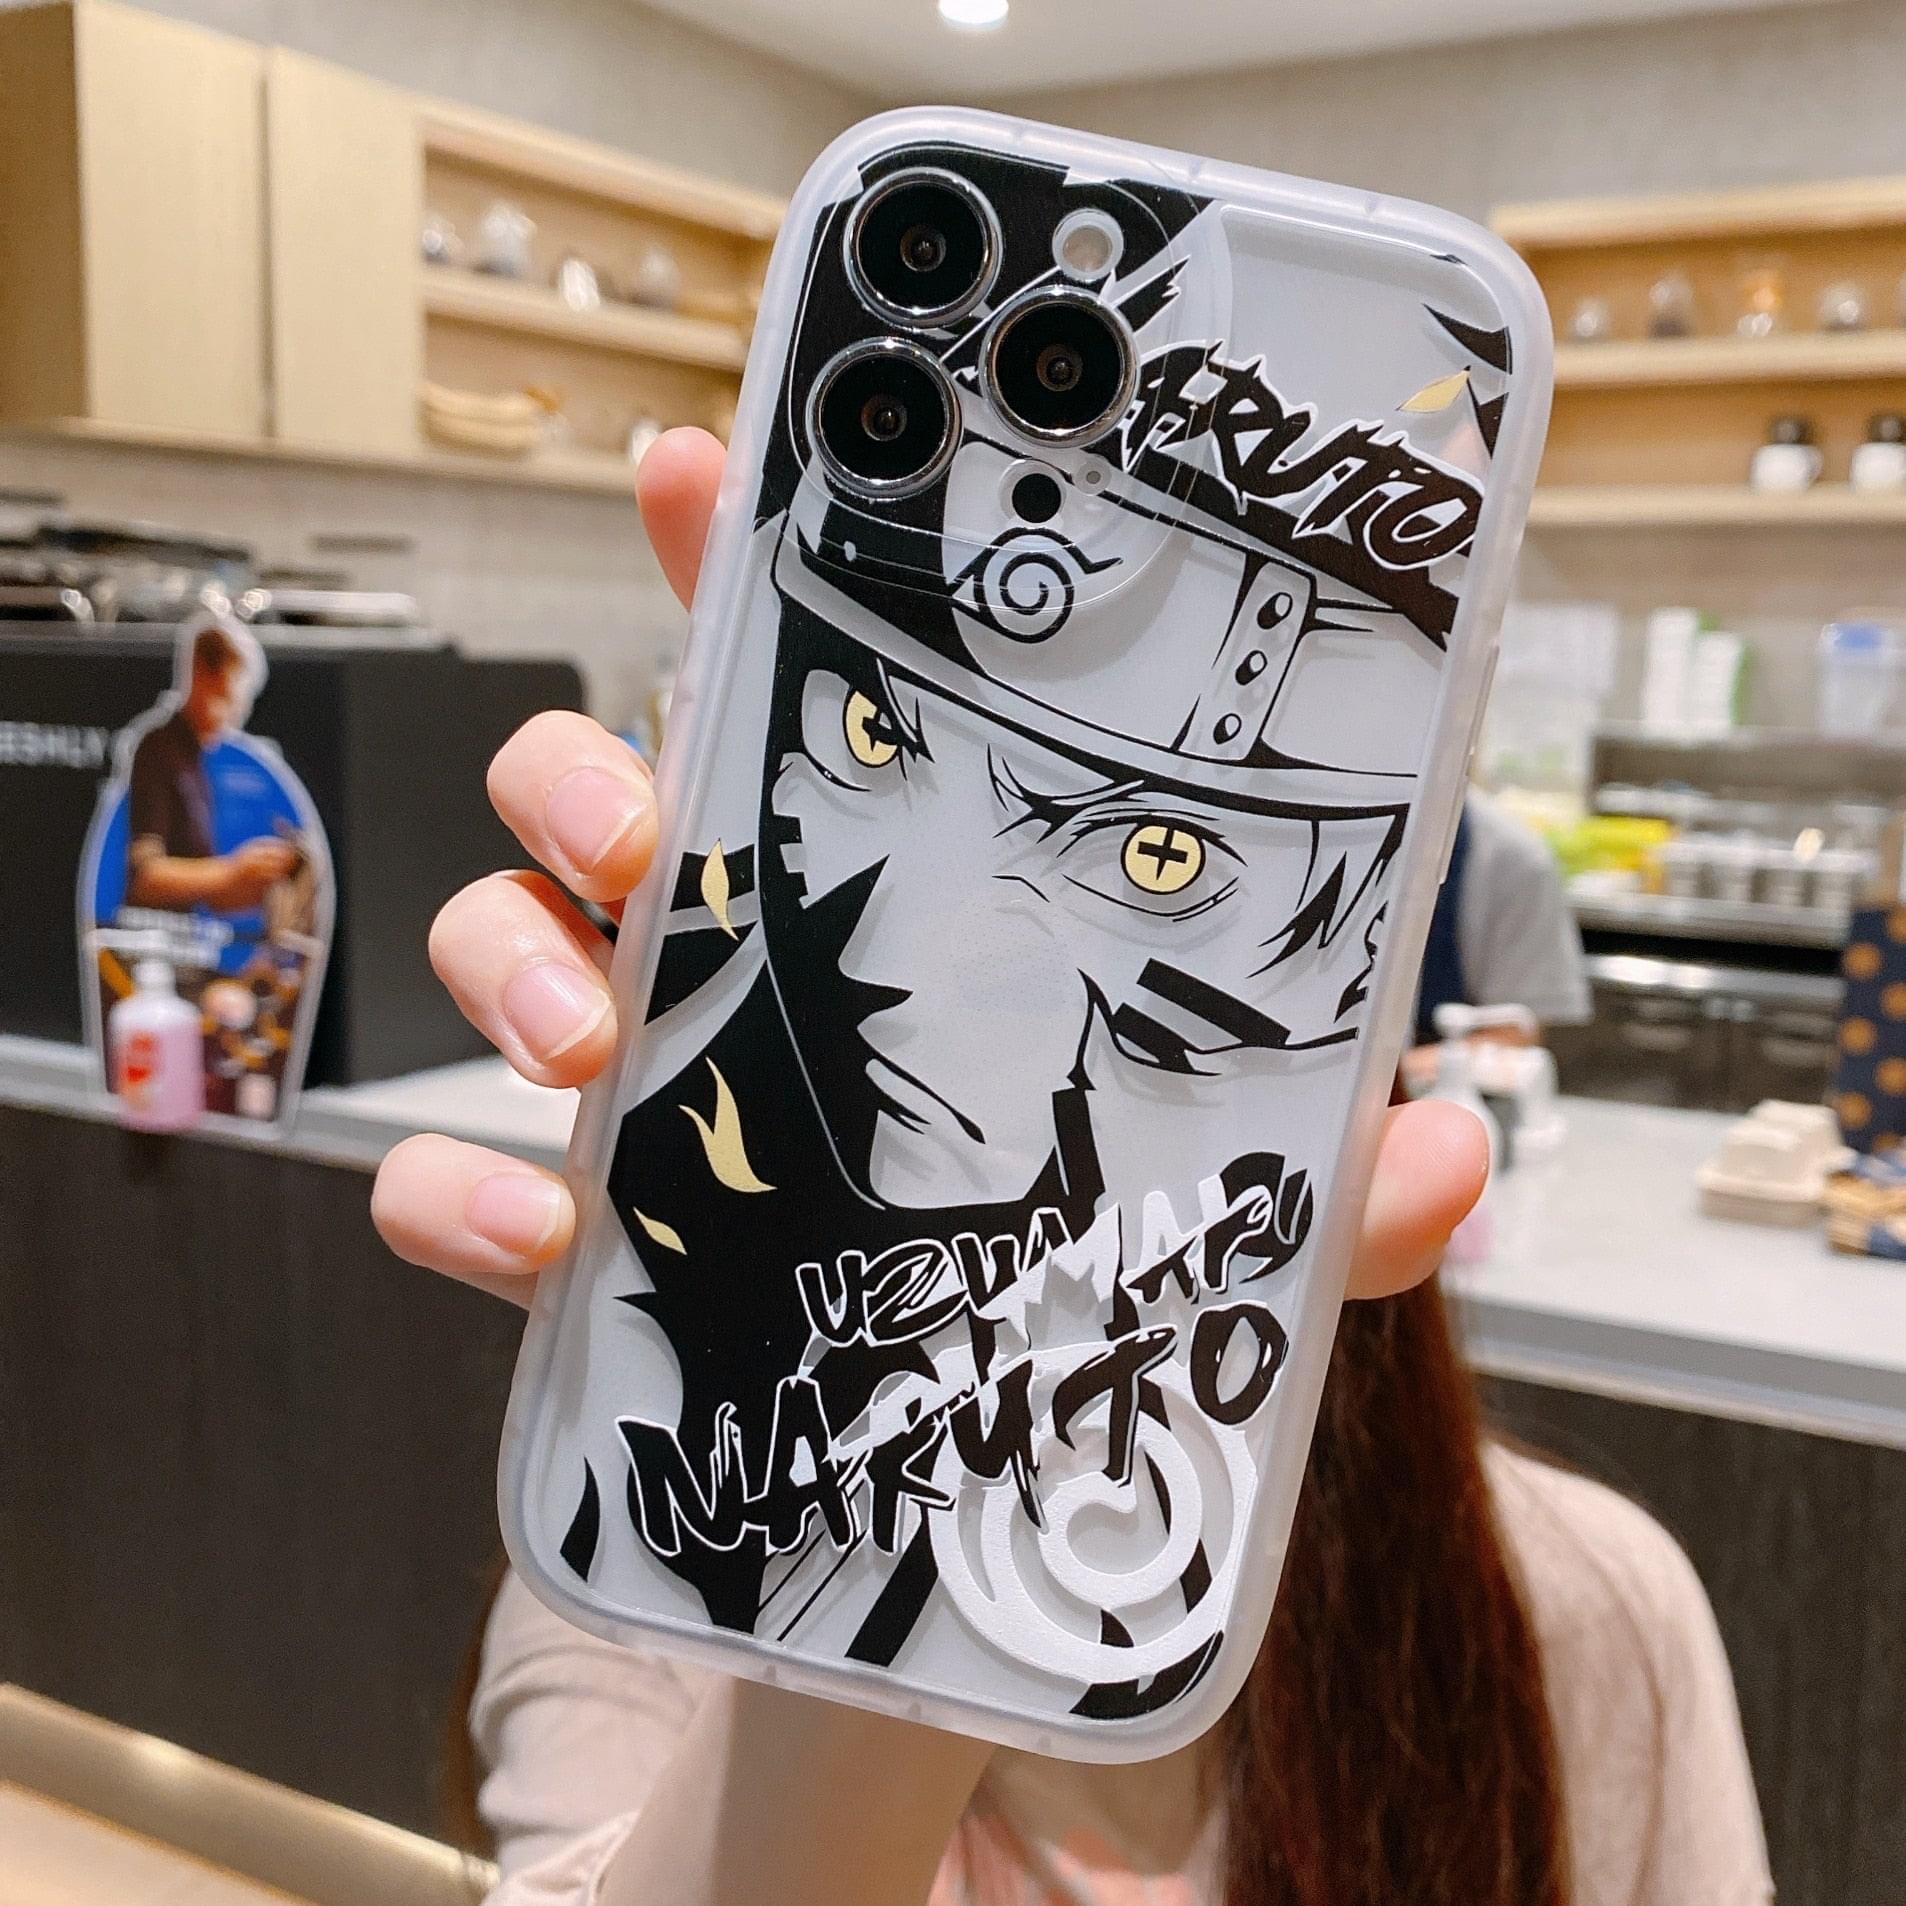 Naruto Iphone case A